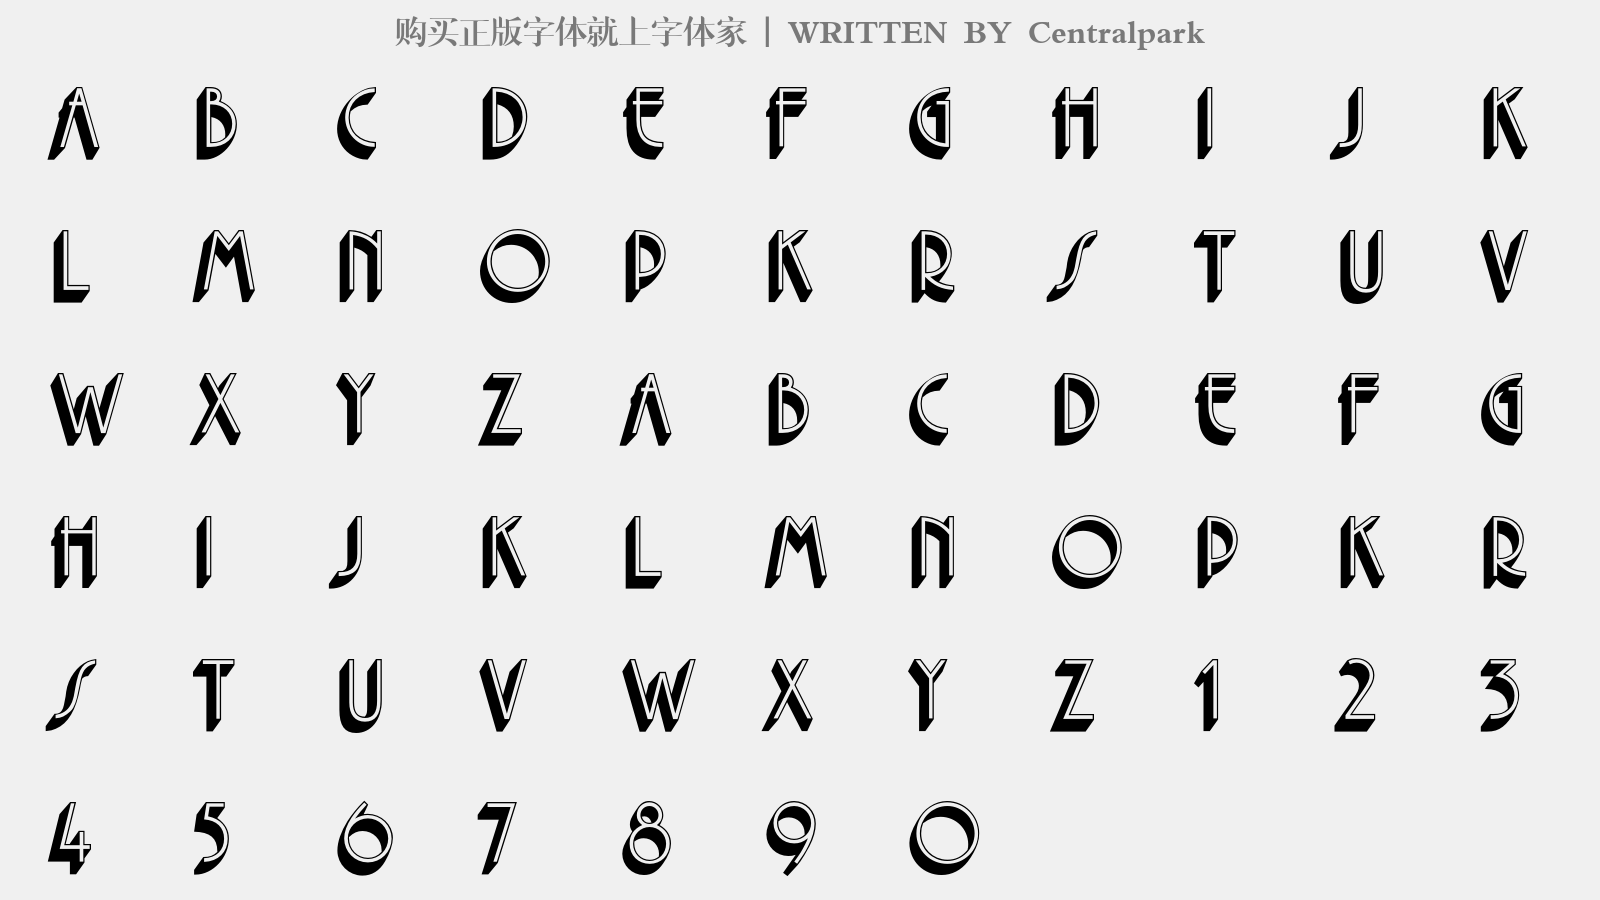 Centralpark - 大写字母/小写字母/数字